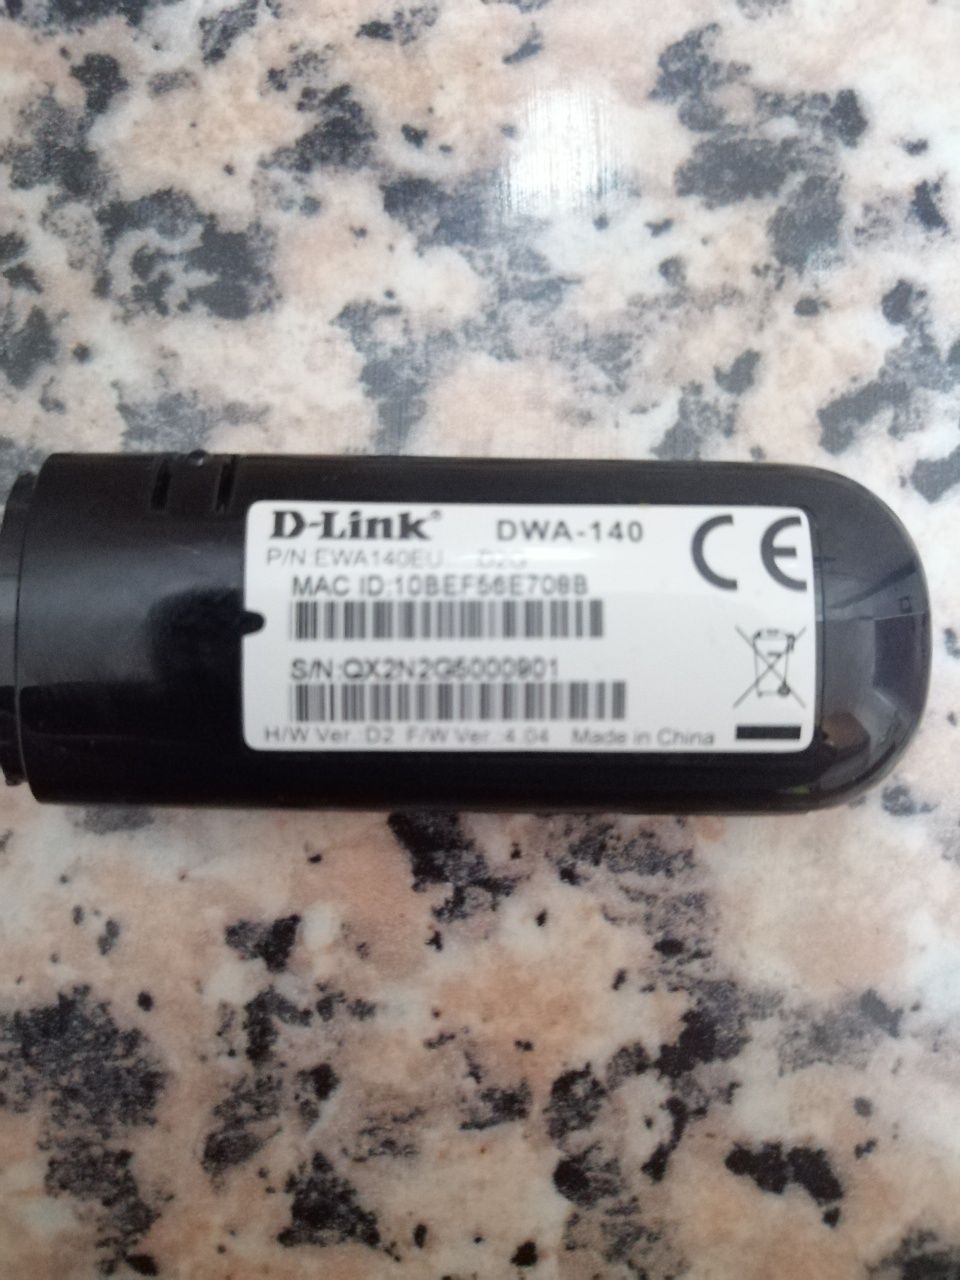 Dlink DWA-140 pen wifi